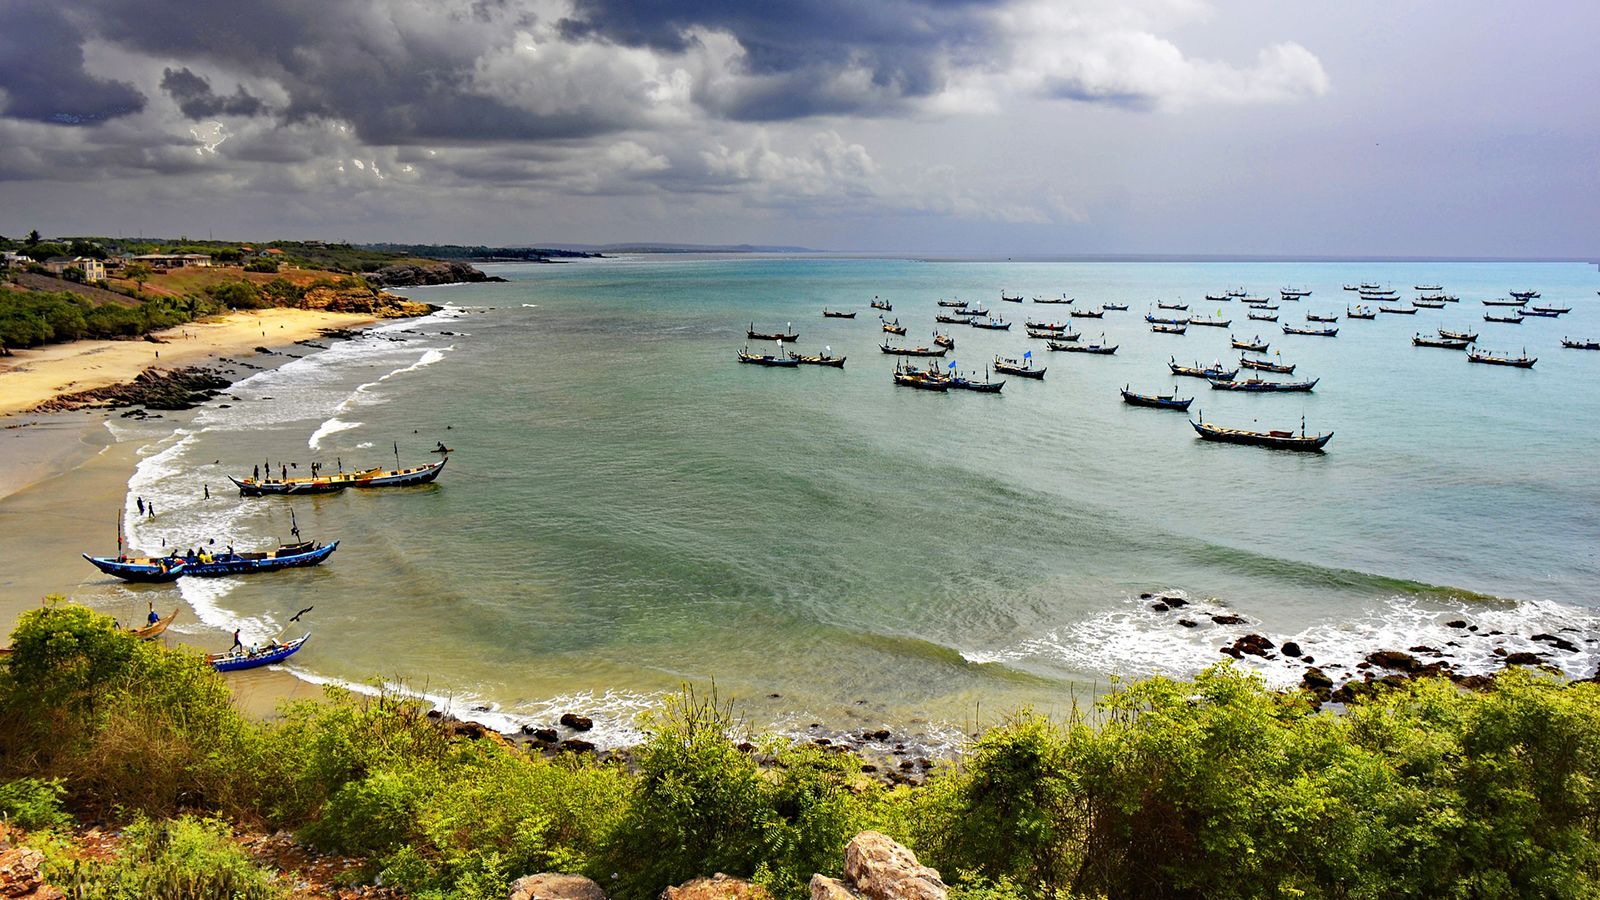 15 любопытных фактов о Гане
море